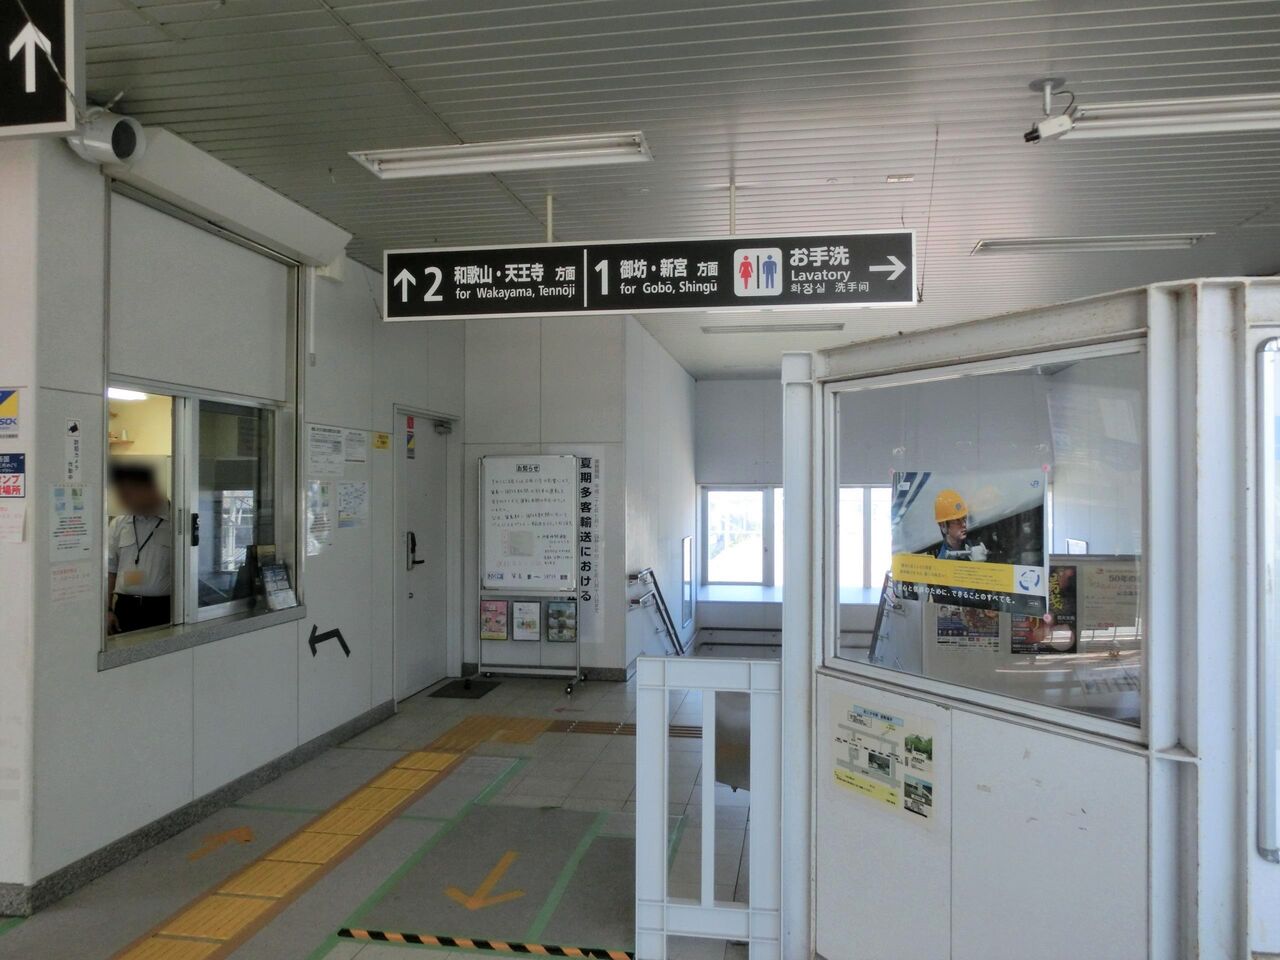 きのくに線 紀三井寺駅 Icoca導入後の改札口を撮る 有人改札から自動改札へ 16年4月 関西のjrへようこそ